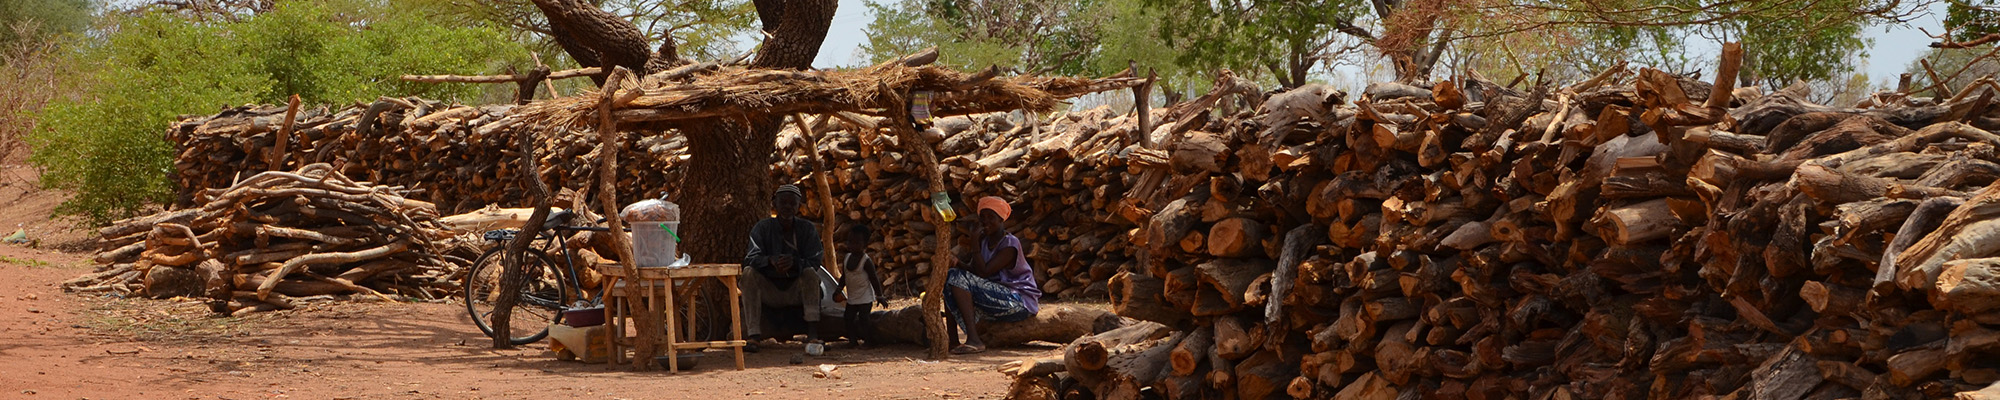 Selling firewood in Burkina Faso (T.Ferre)